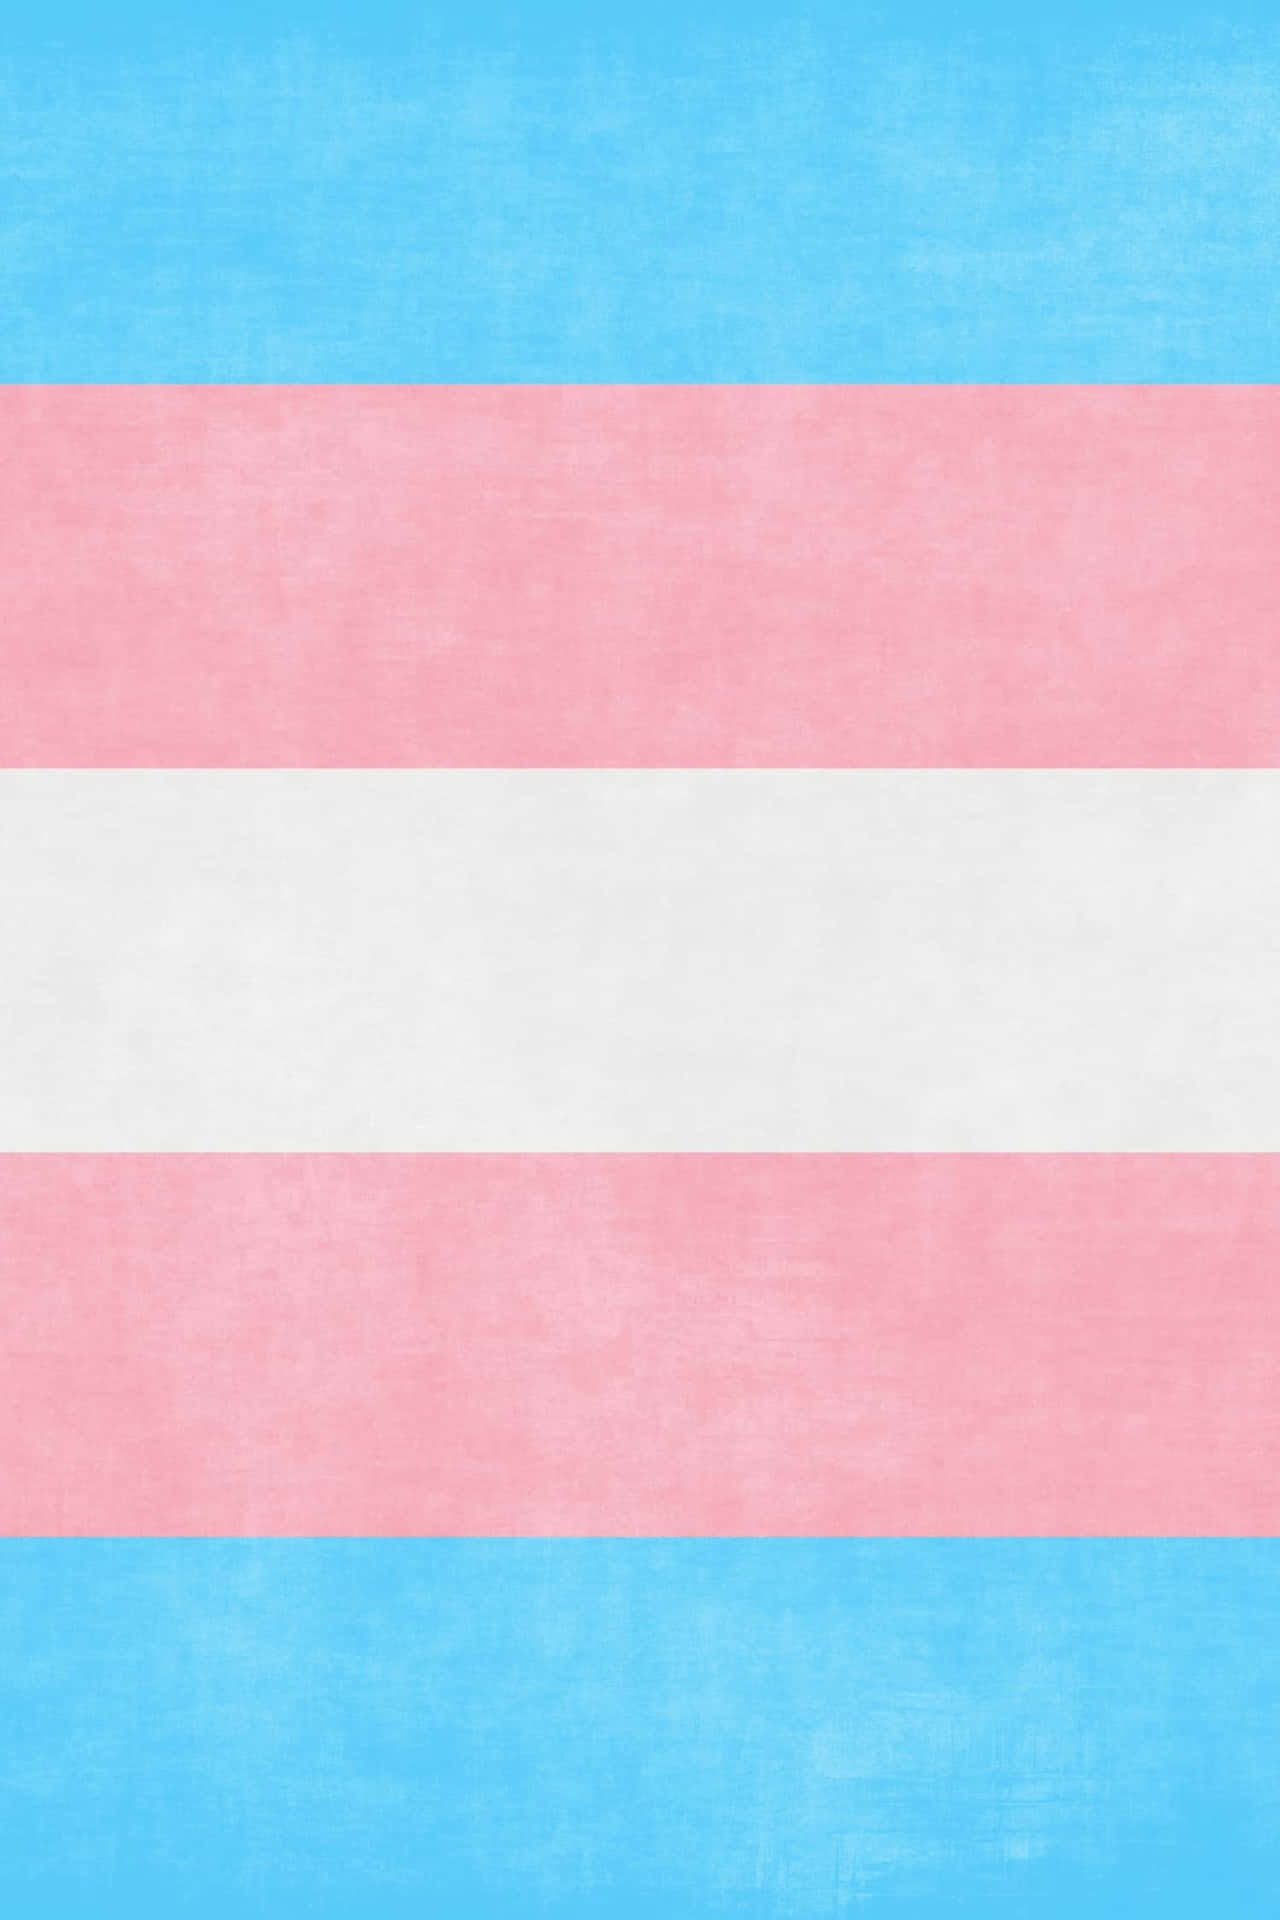 Transgenderflagge Auf Blauem Hintergrund Wallpaper